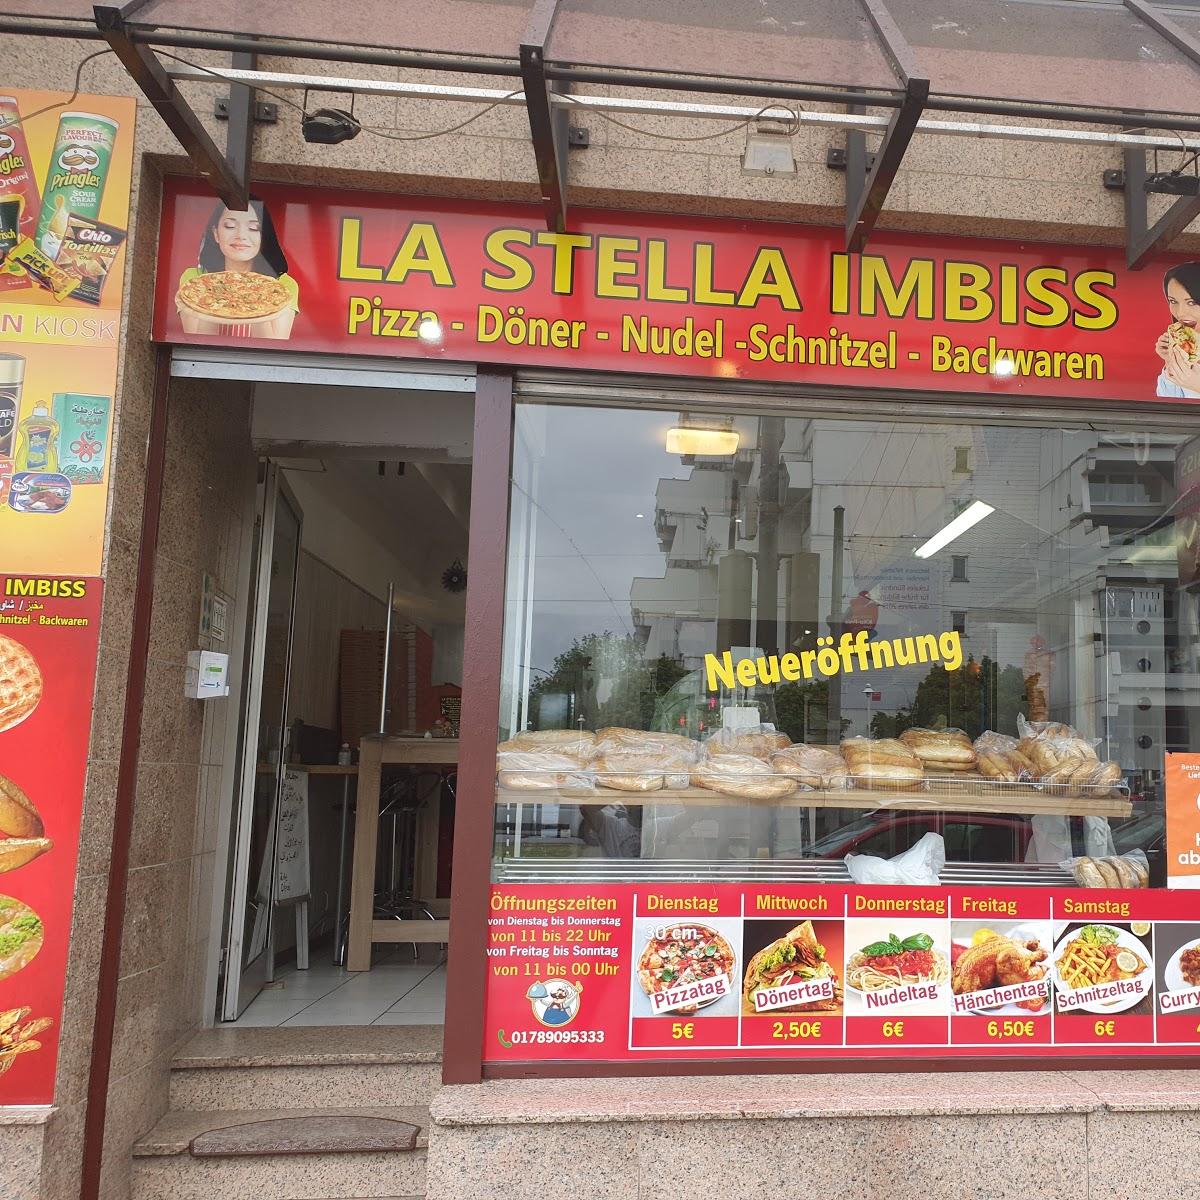 Restaurant "La Stella Imbiss" in Dortmund